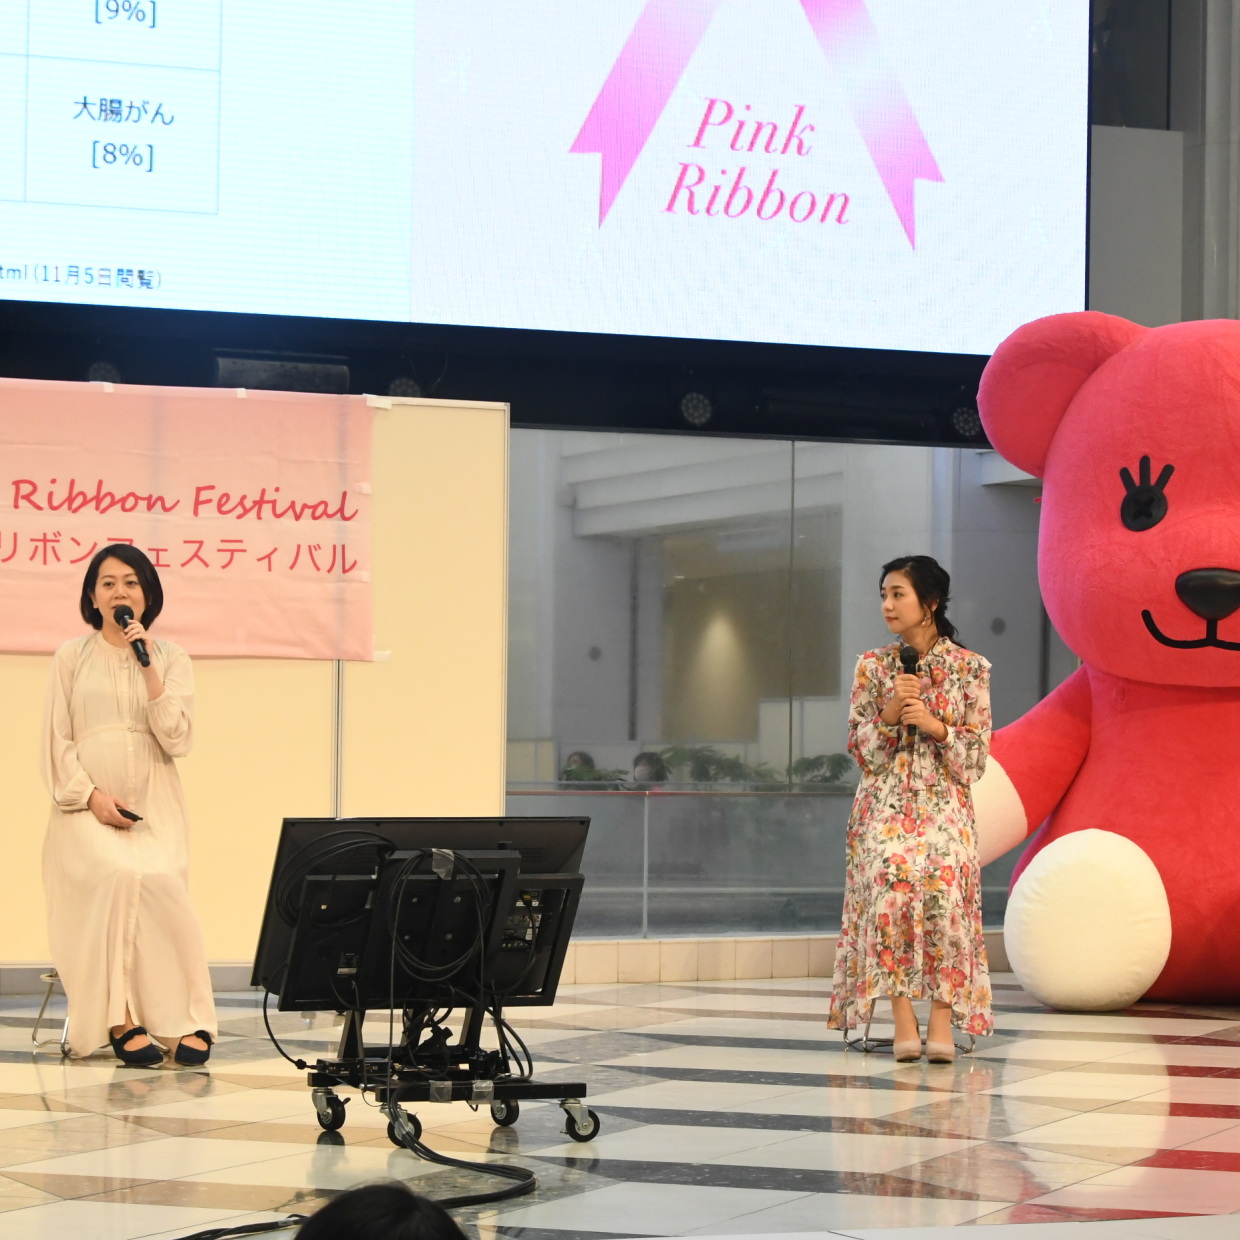  関根麻里さんと学ぶ乳がん講座「家族のためにも健康でいなくては！」【ピンクリボンオープンセミナーレポート】 